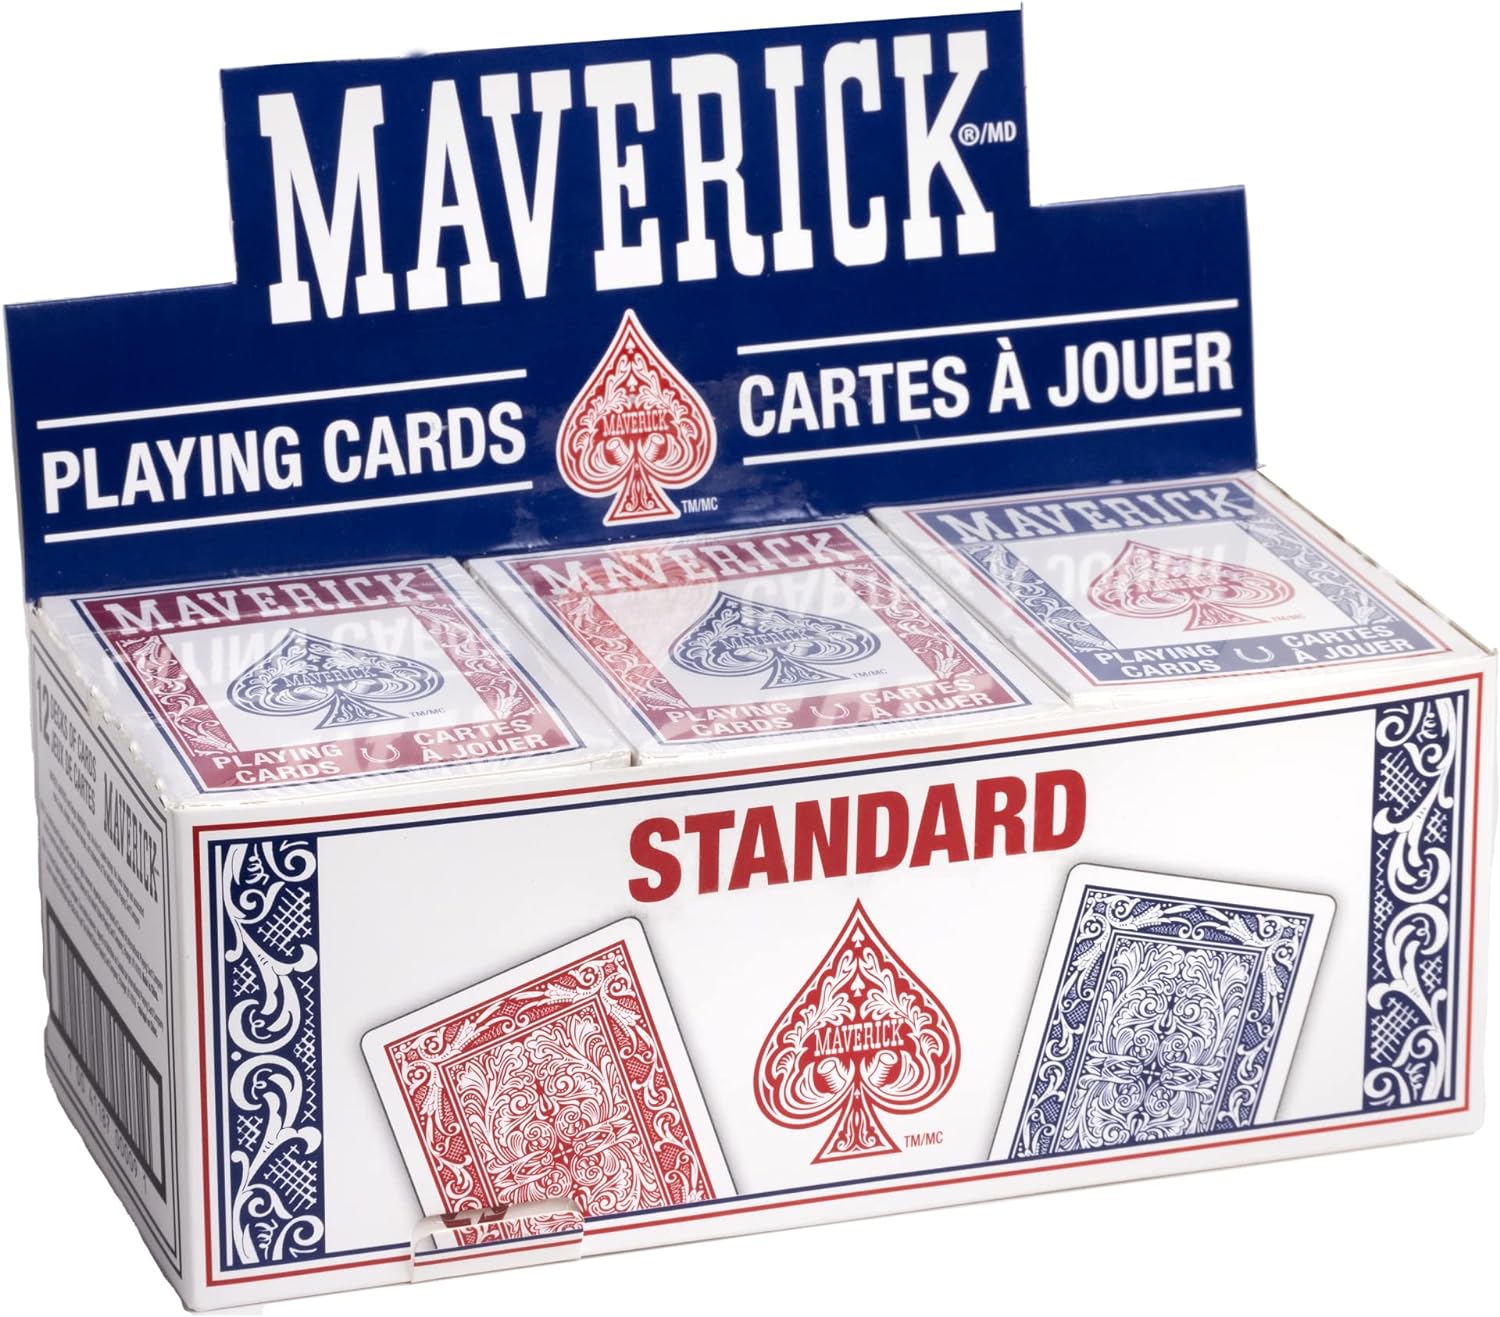 Maverick 10021352 トランプ スタンダードインデックス 12枚入り プラスチックコーティング 滑らか 耐久性 カードゲーム トランプデッキ遊び ポーカー ブラックジャック 子ども 大人